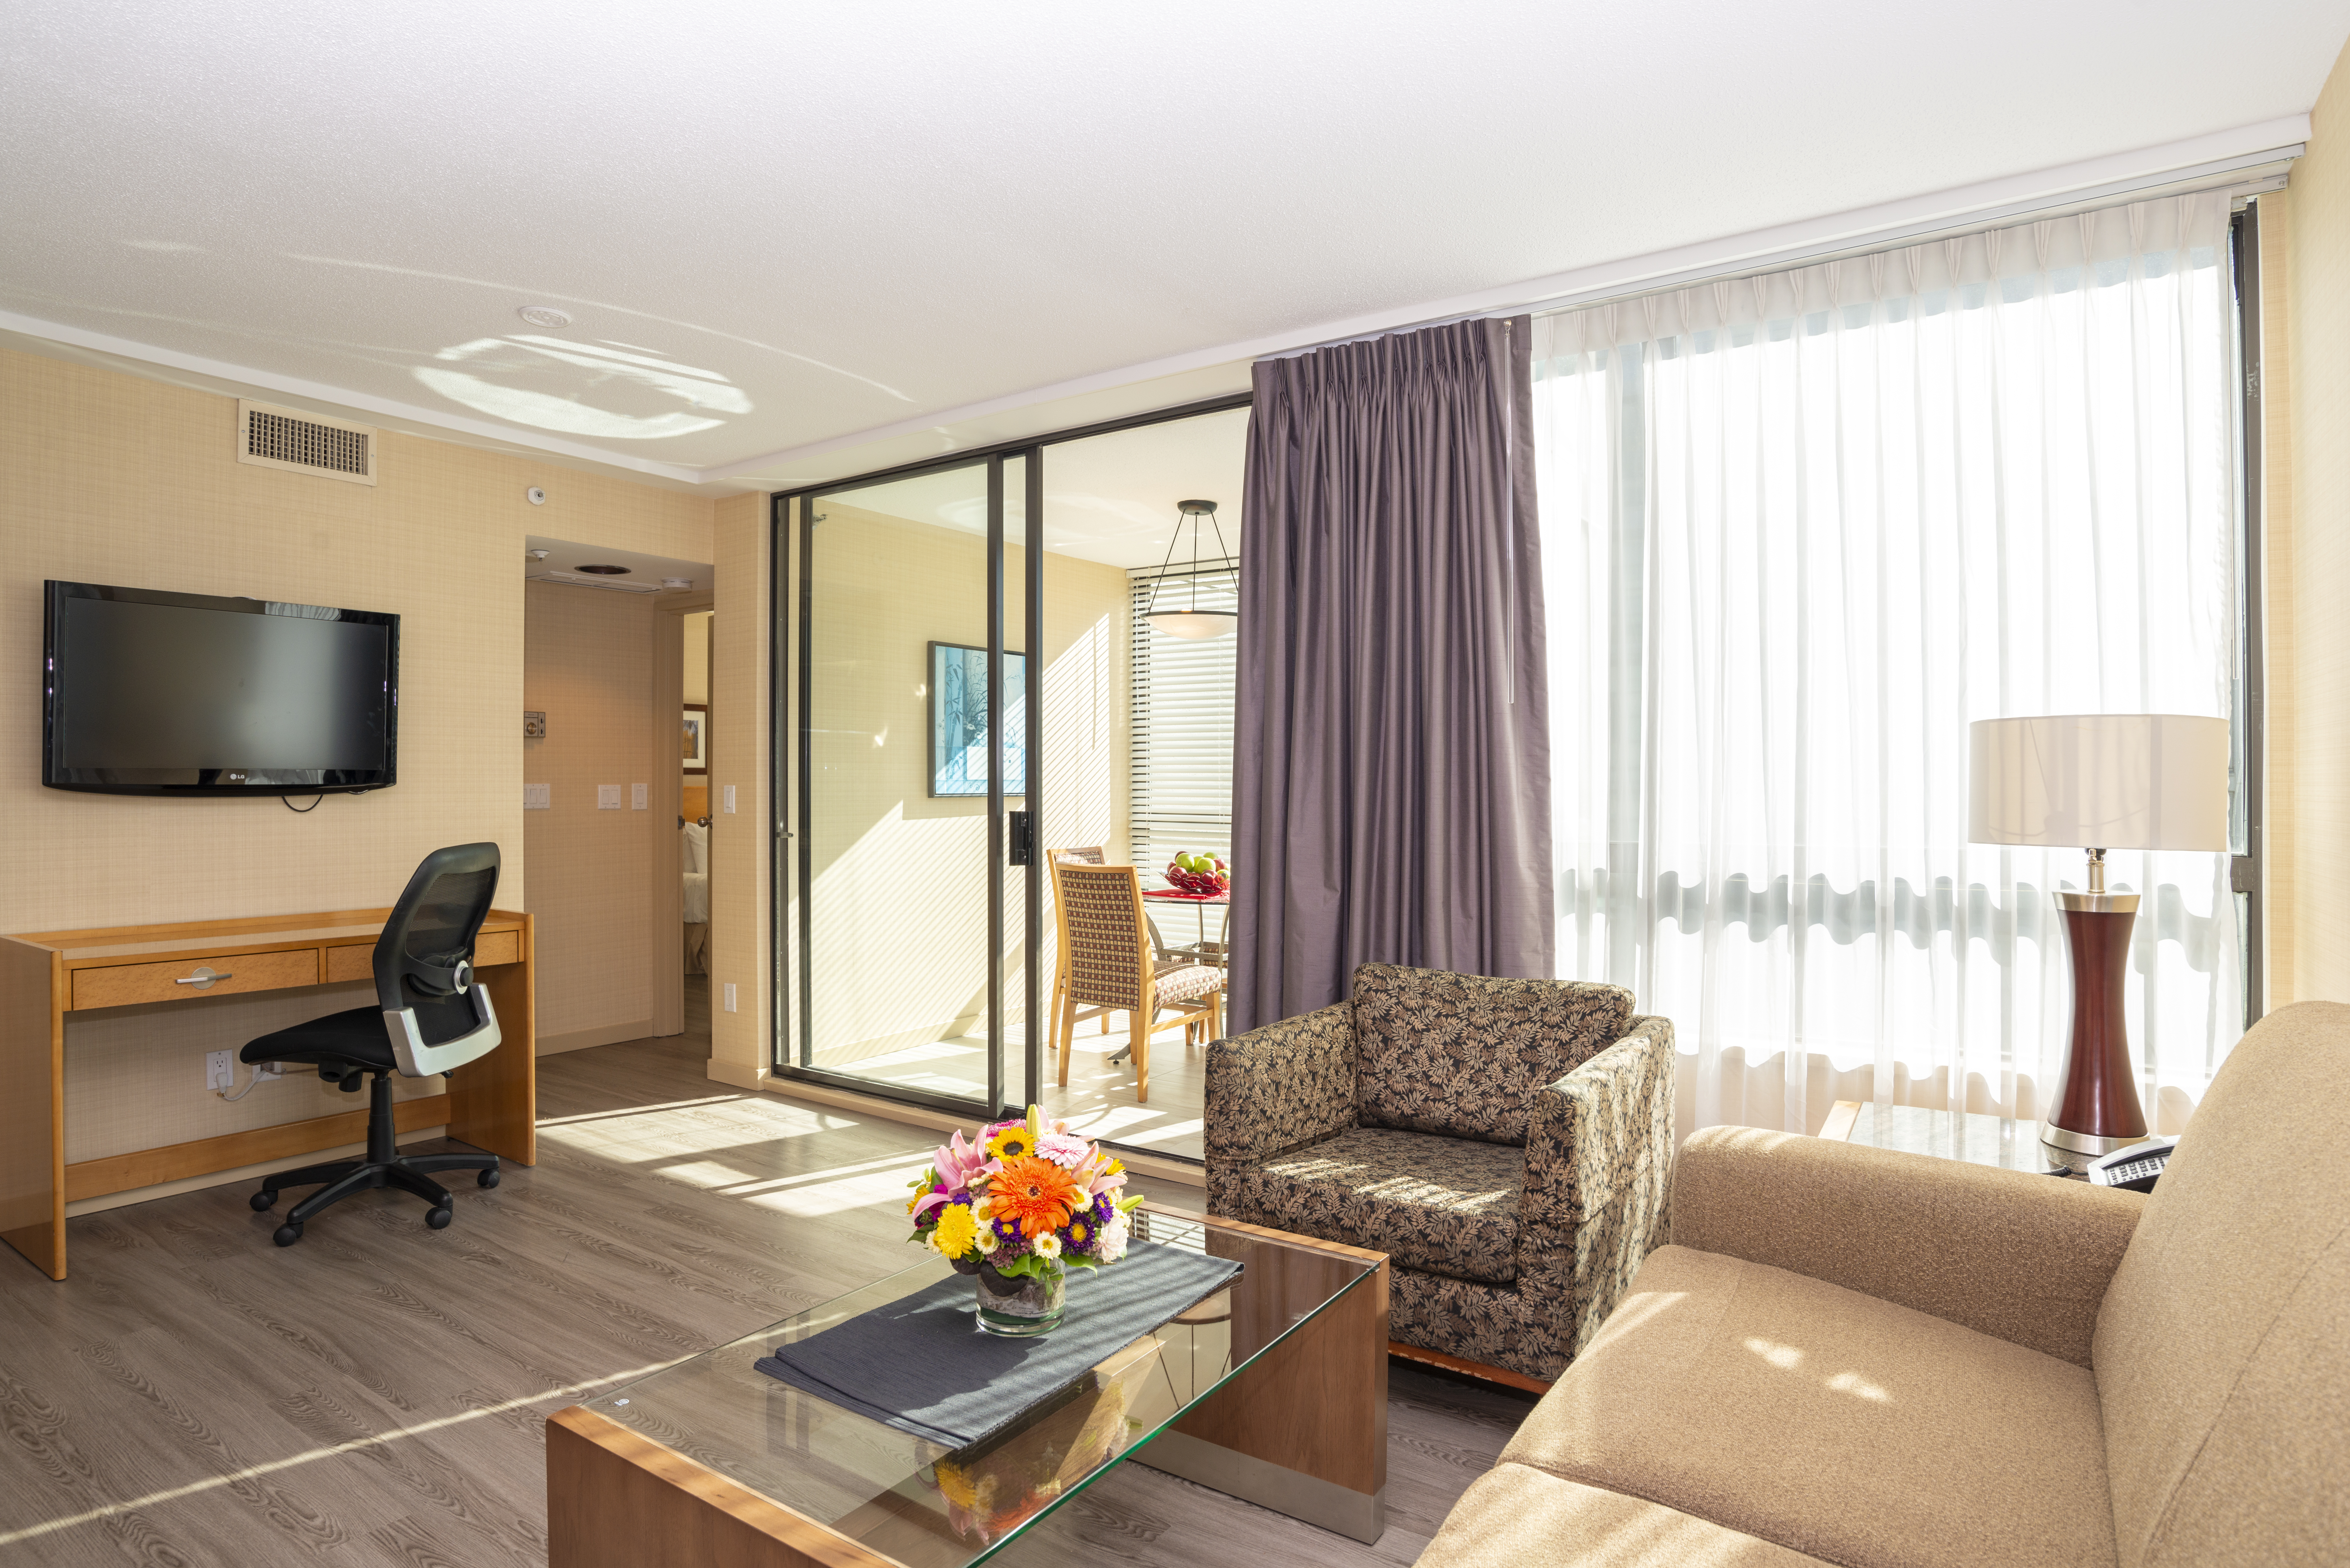 The Landis Hotel & Suites